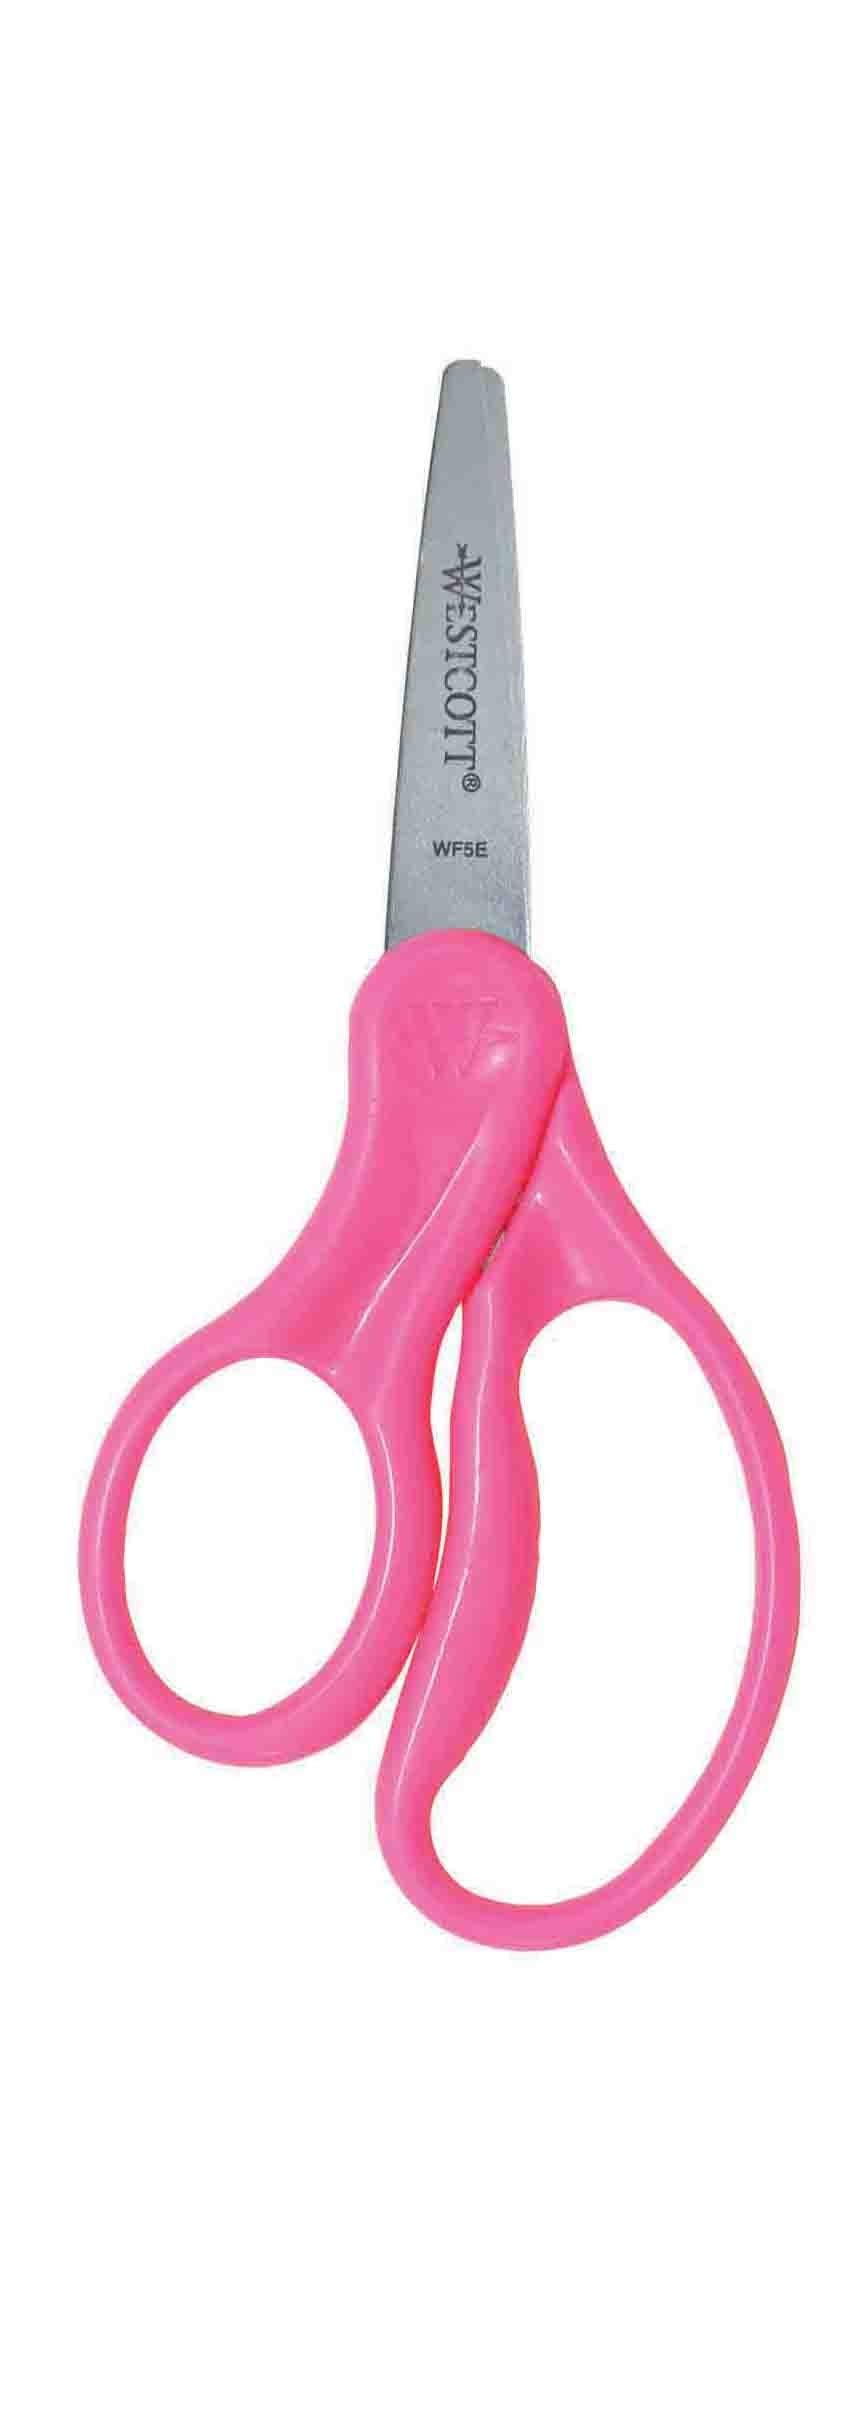 Westcott 13594 Left-Handed Scissors, Hard Handle Kids' Scissors, Ages 4-8, 5-Inch Blunt Tip